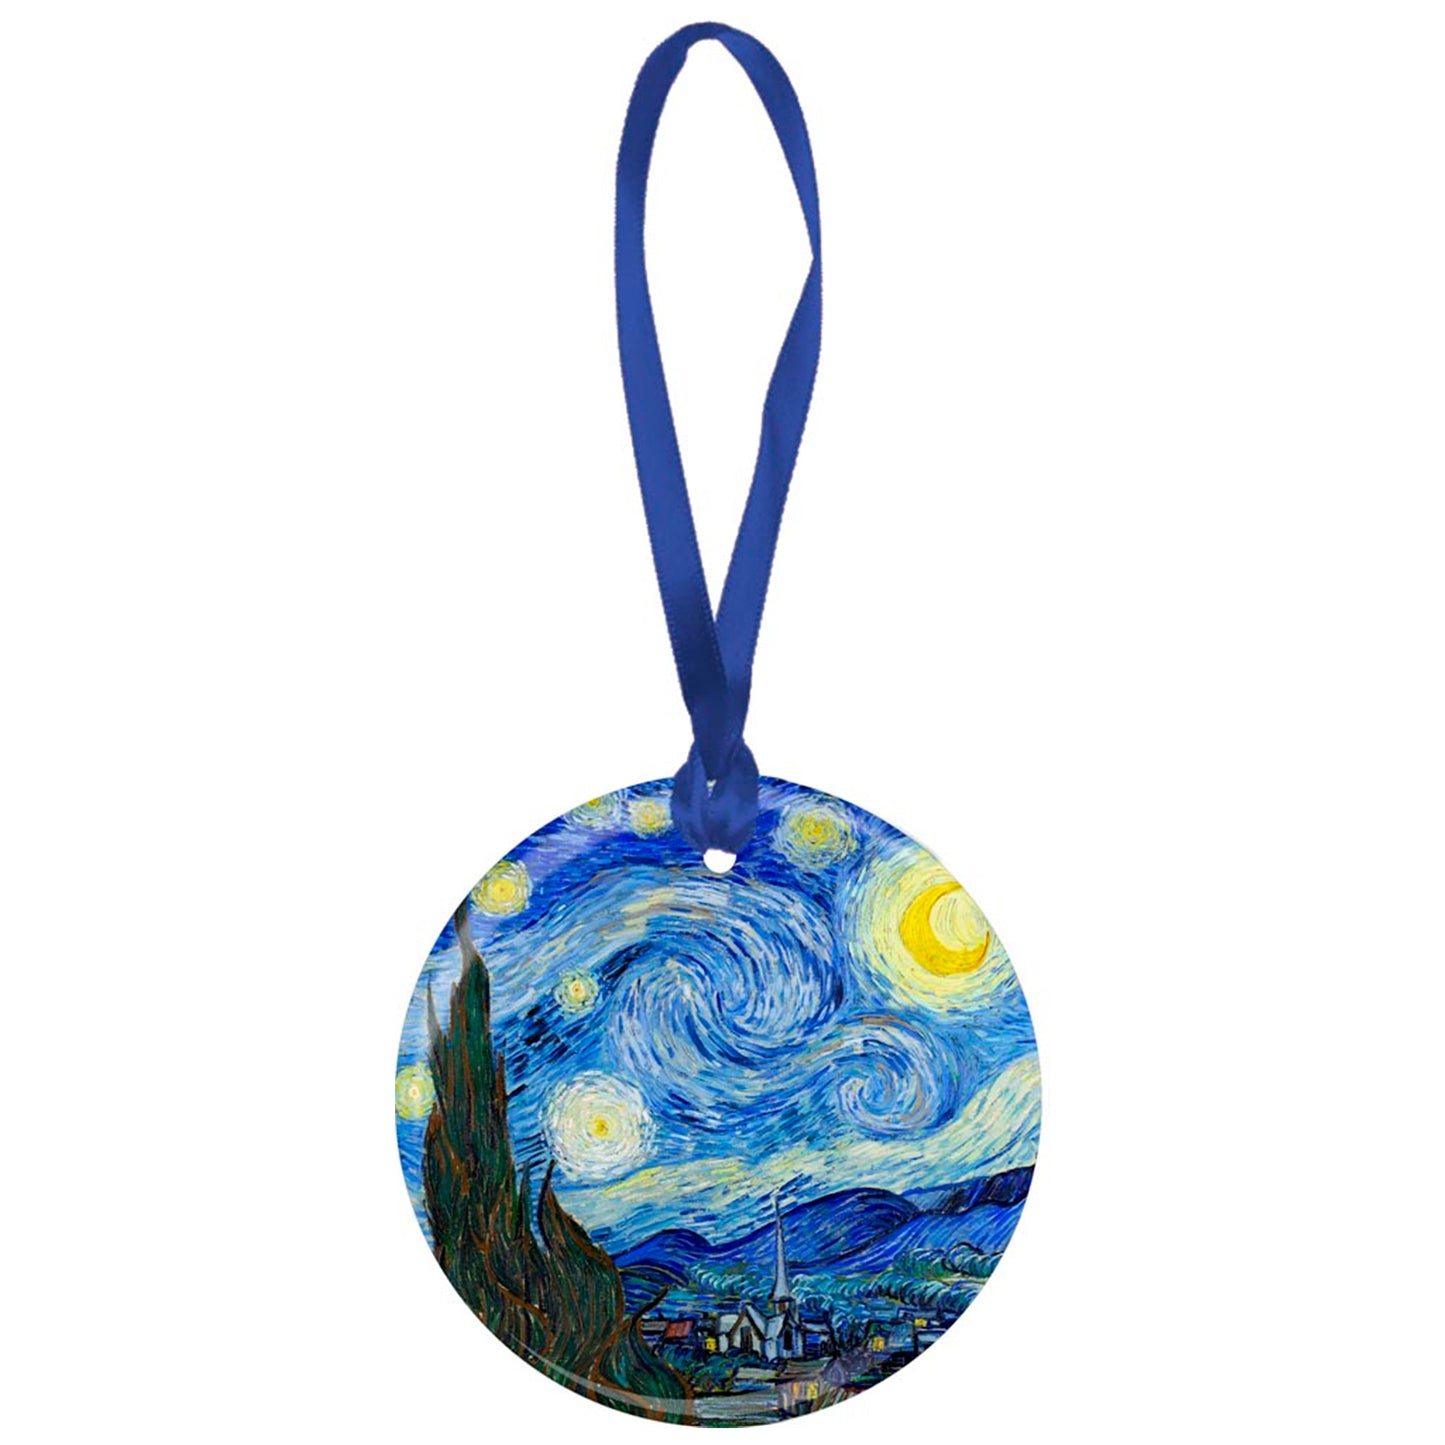 Adorno de porcelana "La noche estrellada" de Van Gogh